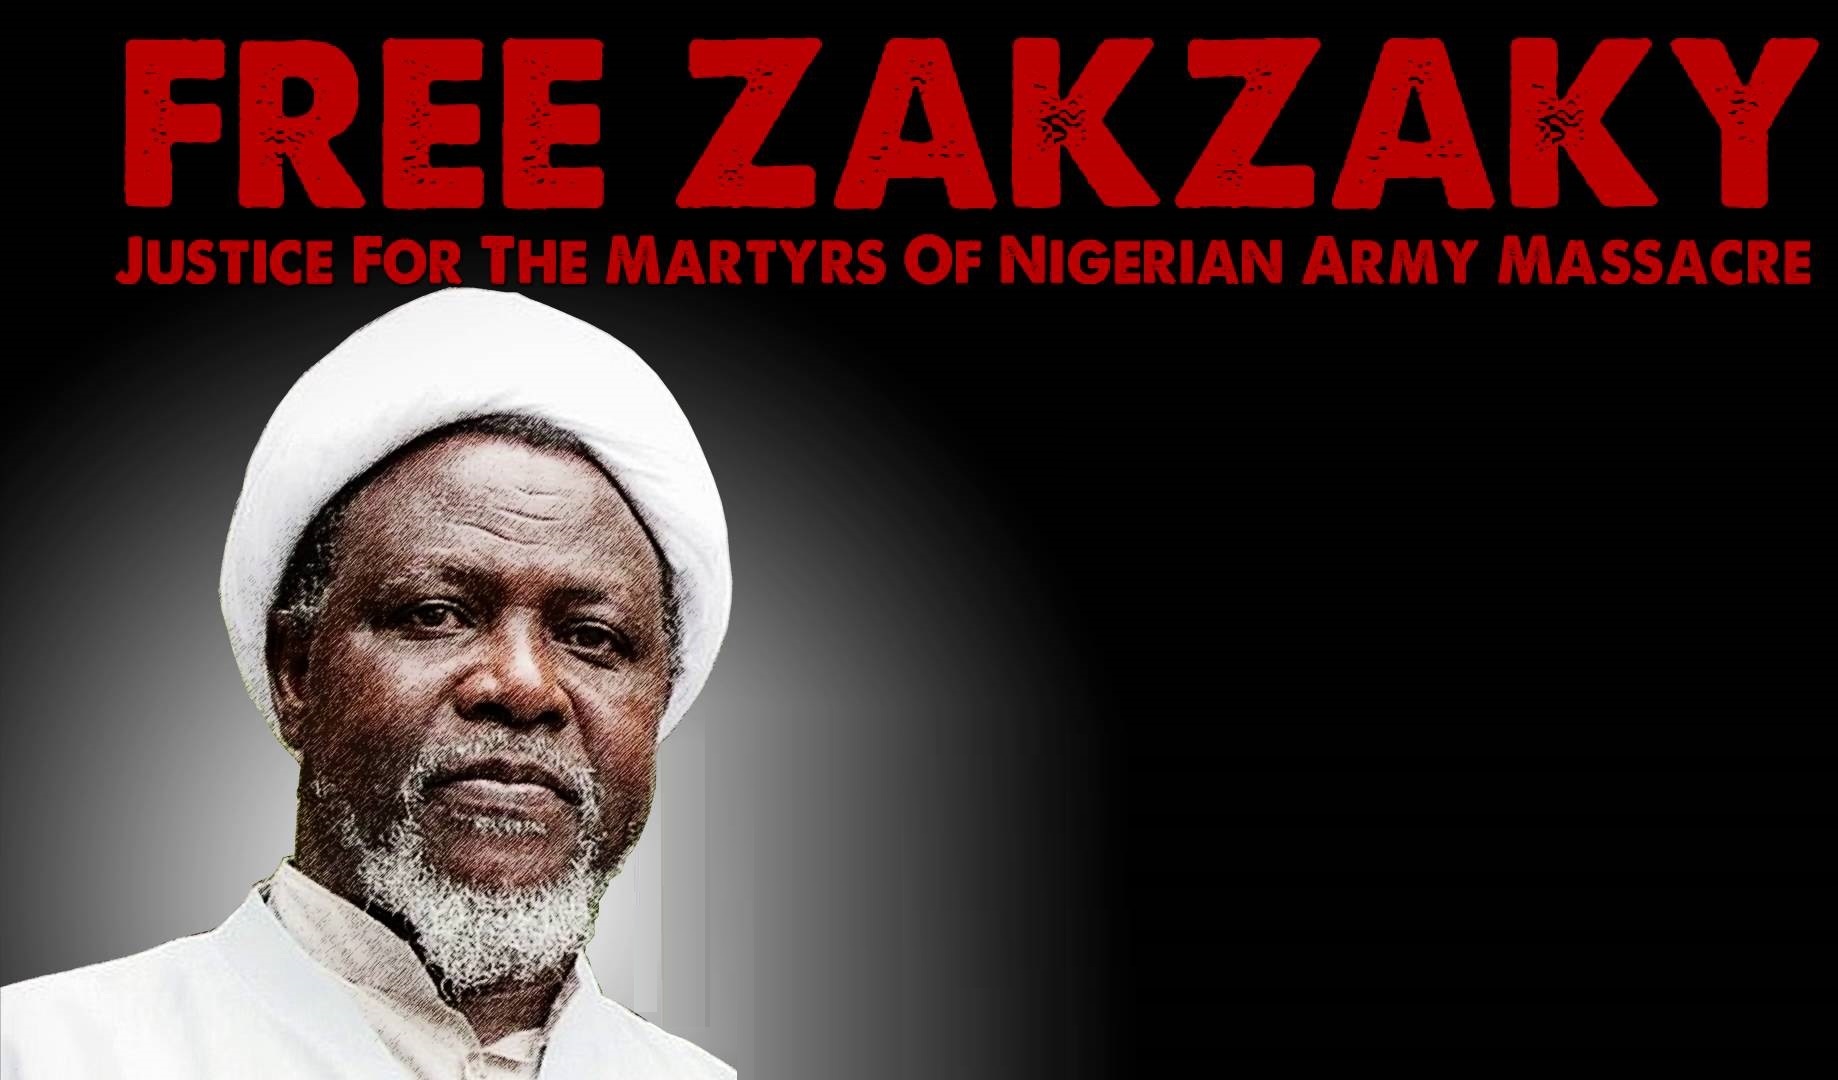 Ибрахим Муса: «Режим Бухари, а не шейх Закзаки, должен предстать перед судом»